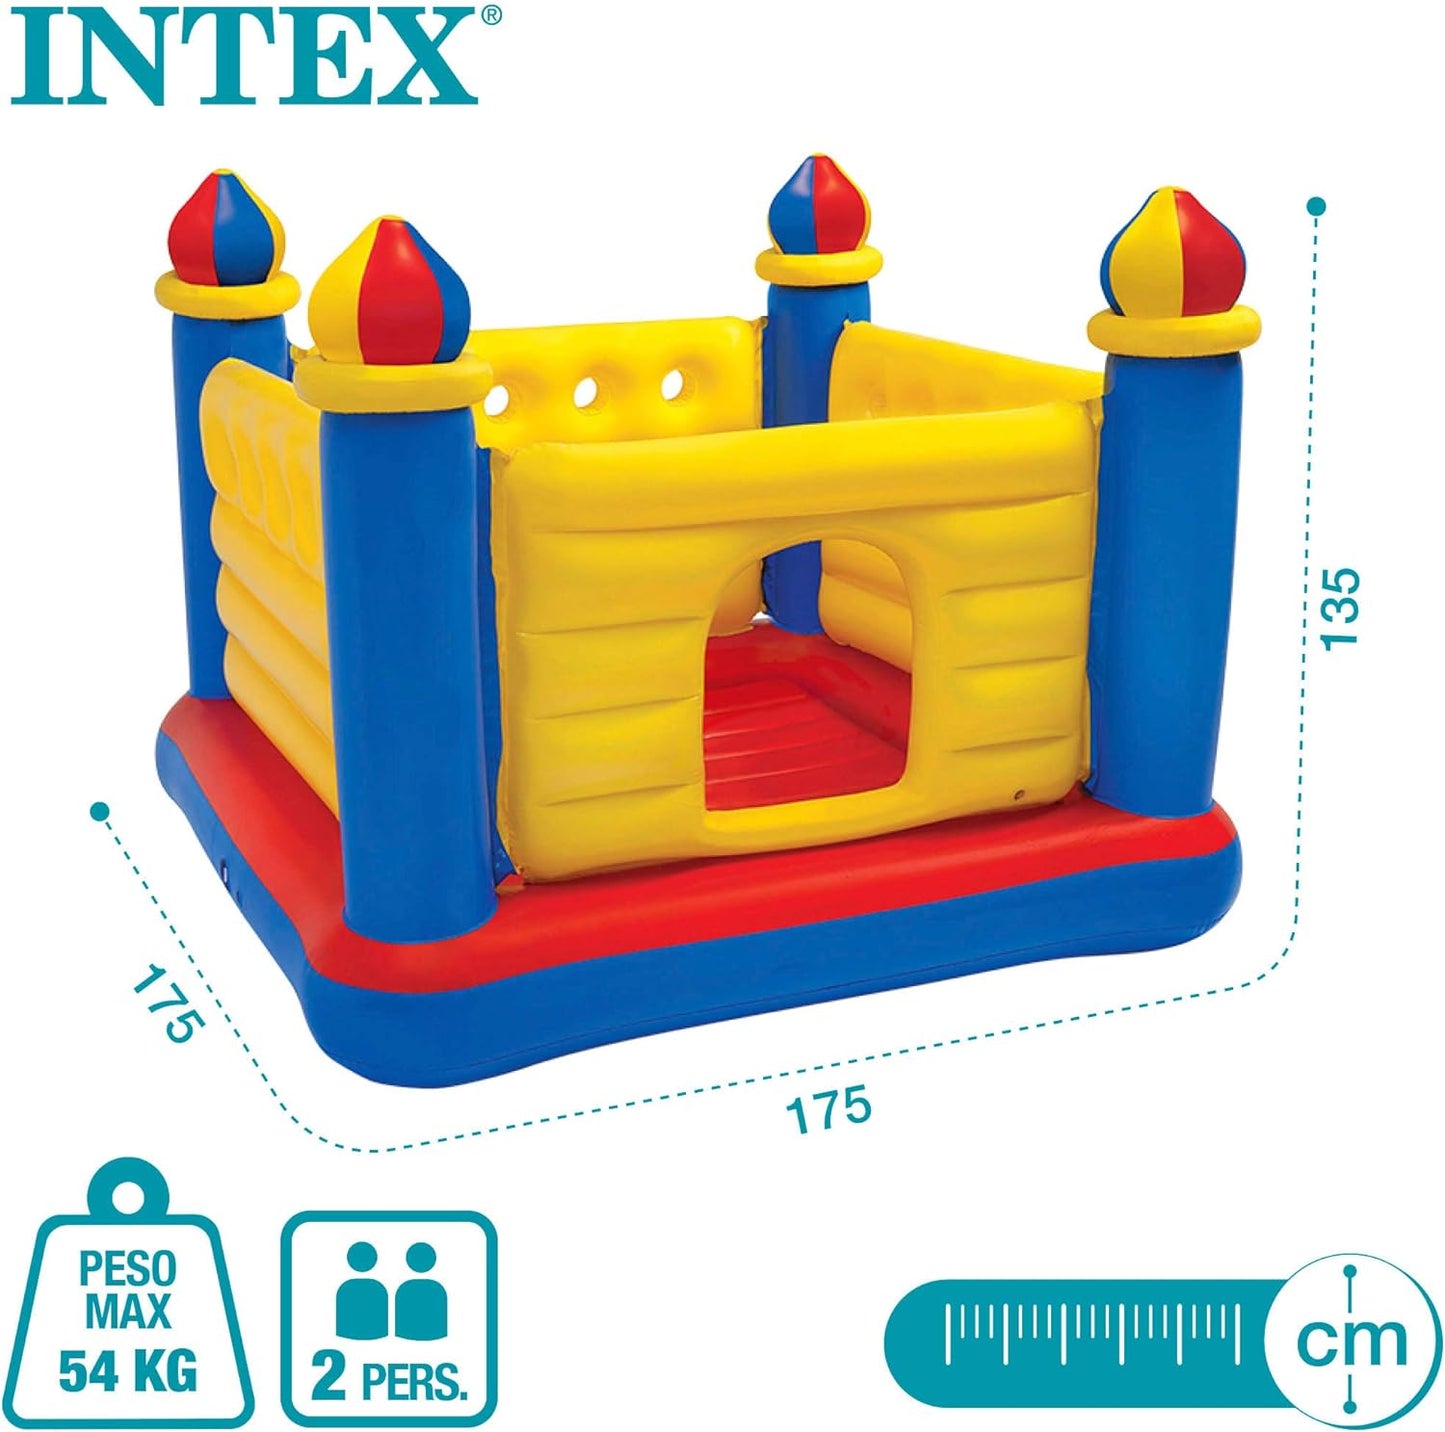 Intex Jump-O-Lene Castle Inflatable Bouncer, 175.3 X 175.3 X 134.6 Cm